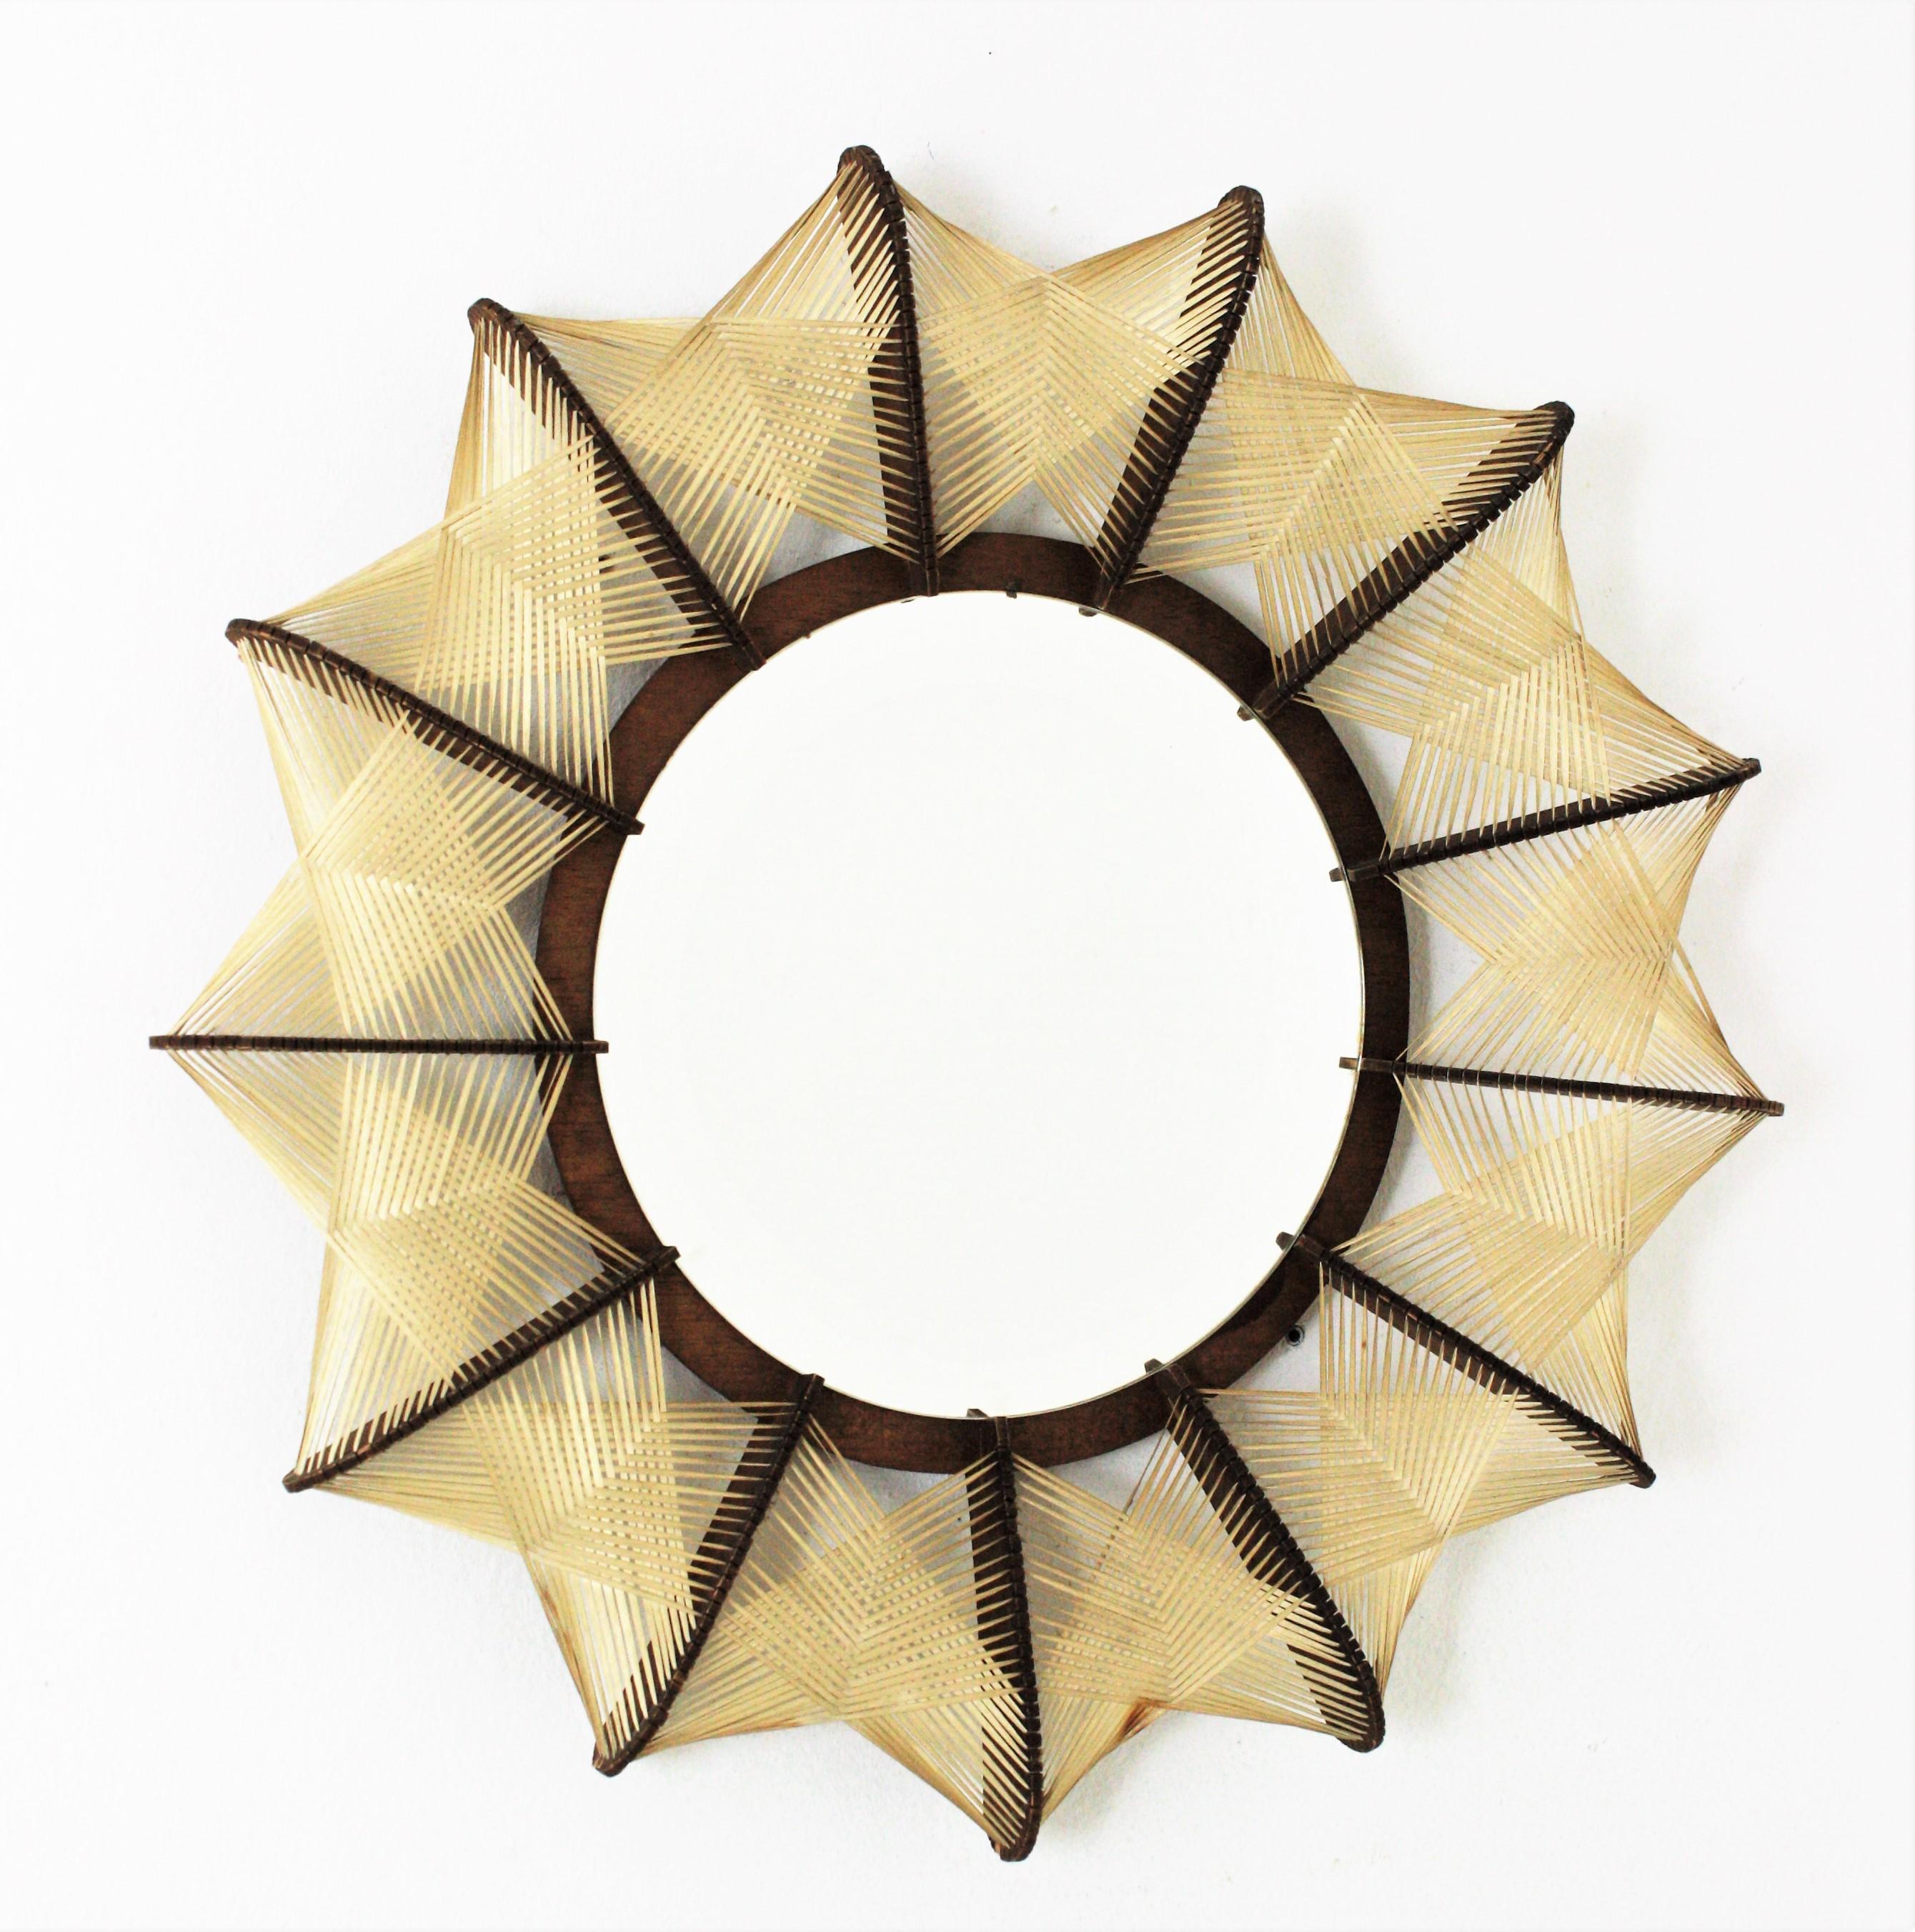 Skandinavisch-moderner handgefertigter Holzspiegel mit geflochtenem Weidenrahmen, Frankreich, 1960er Jahre.
Dieser runde, handgefertigte Spiegel aus der Mitte des 20. Jahrhunderts weist skandinavische Designakzente auf. Die skulpturale,